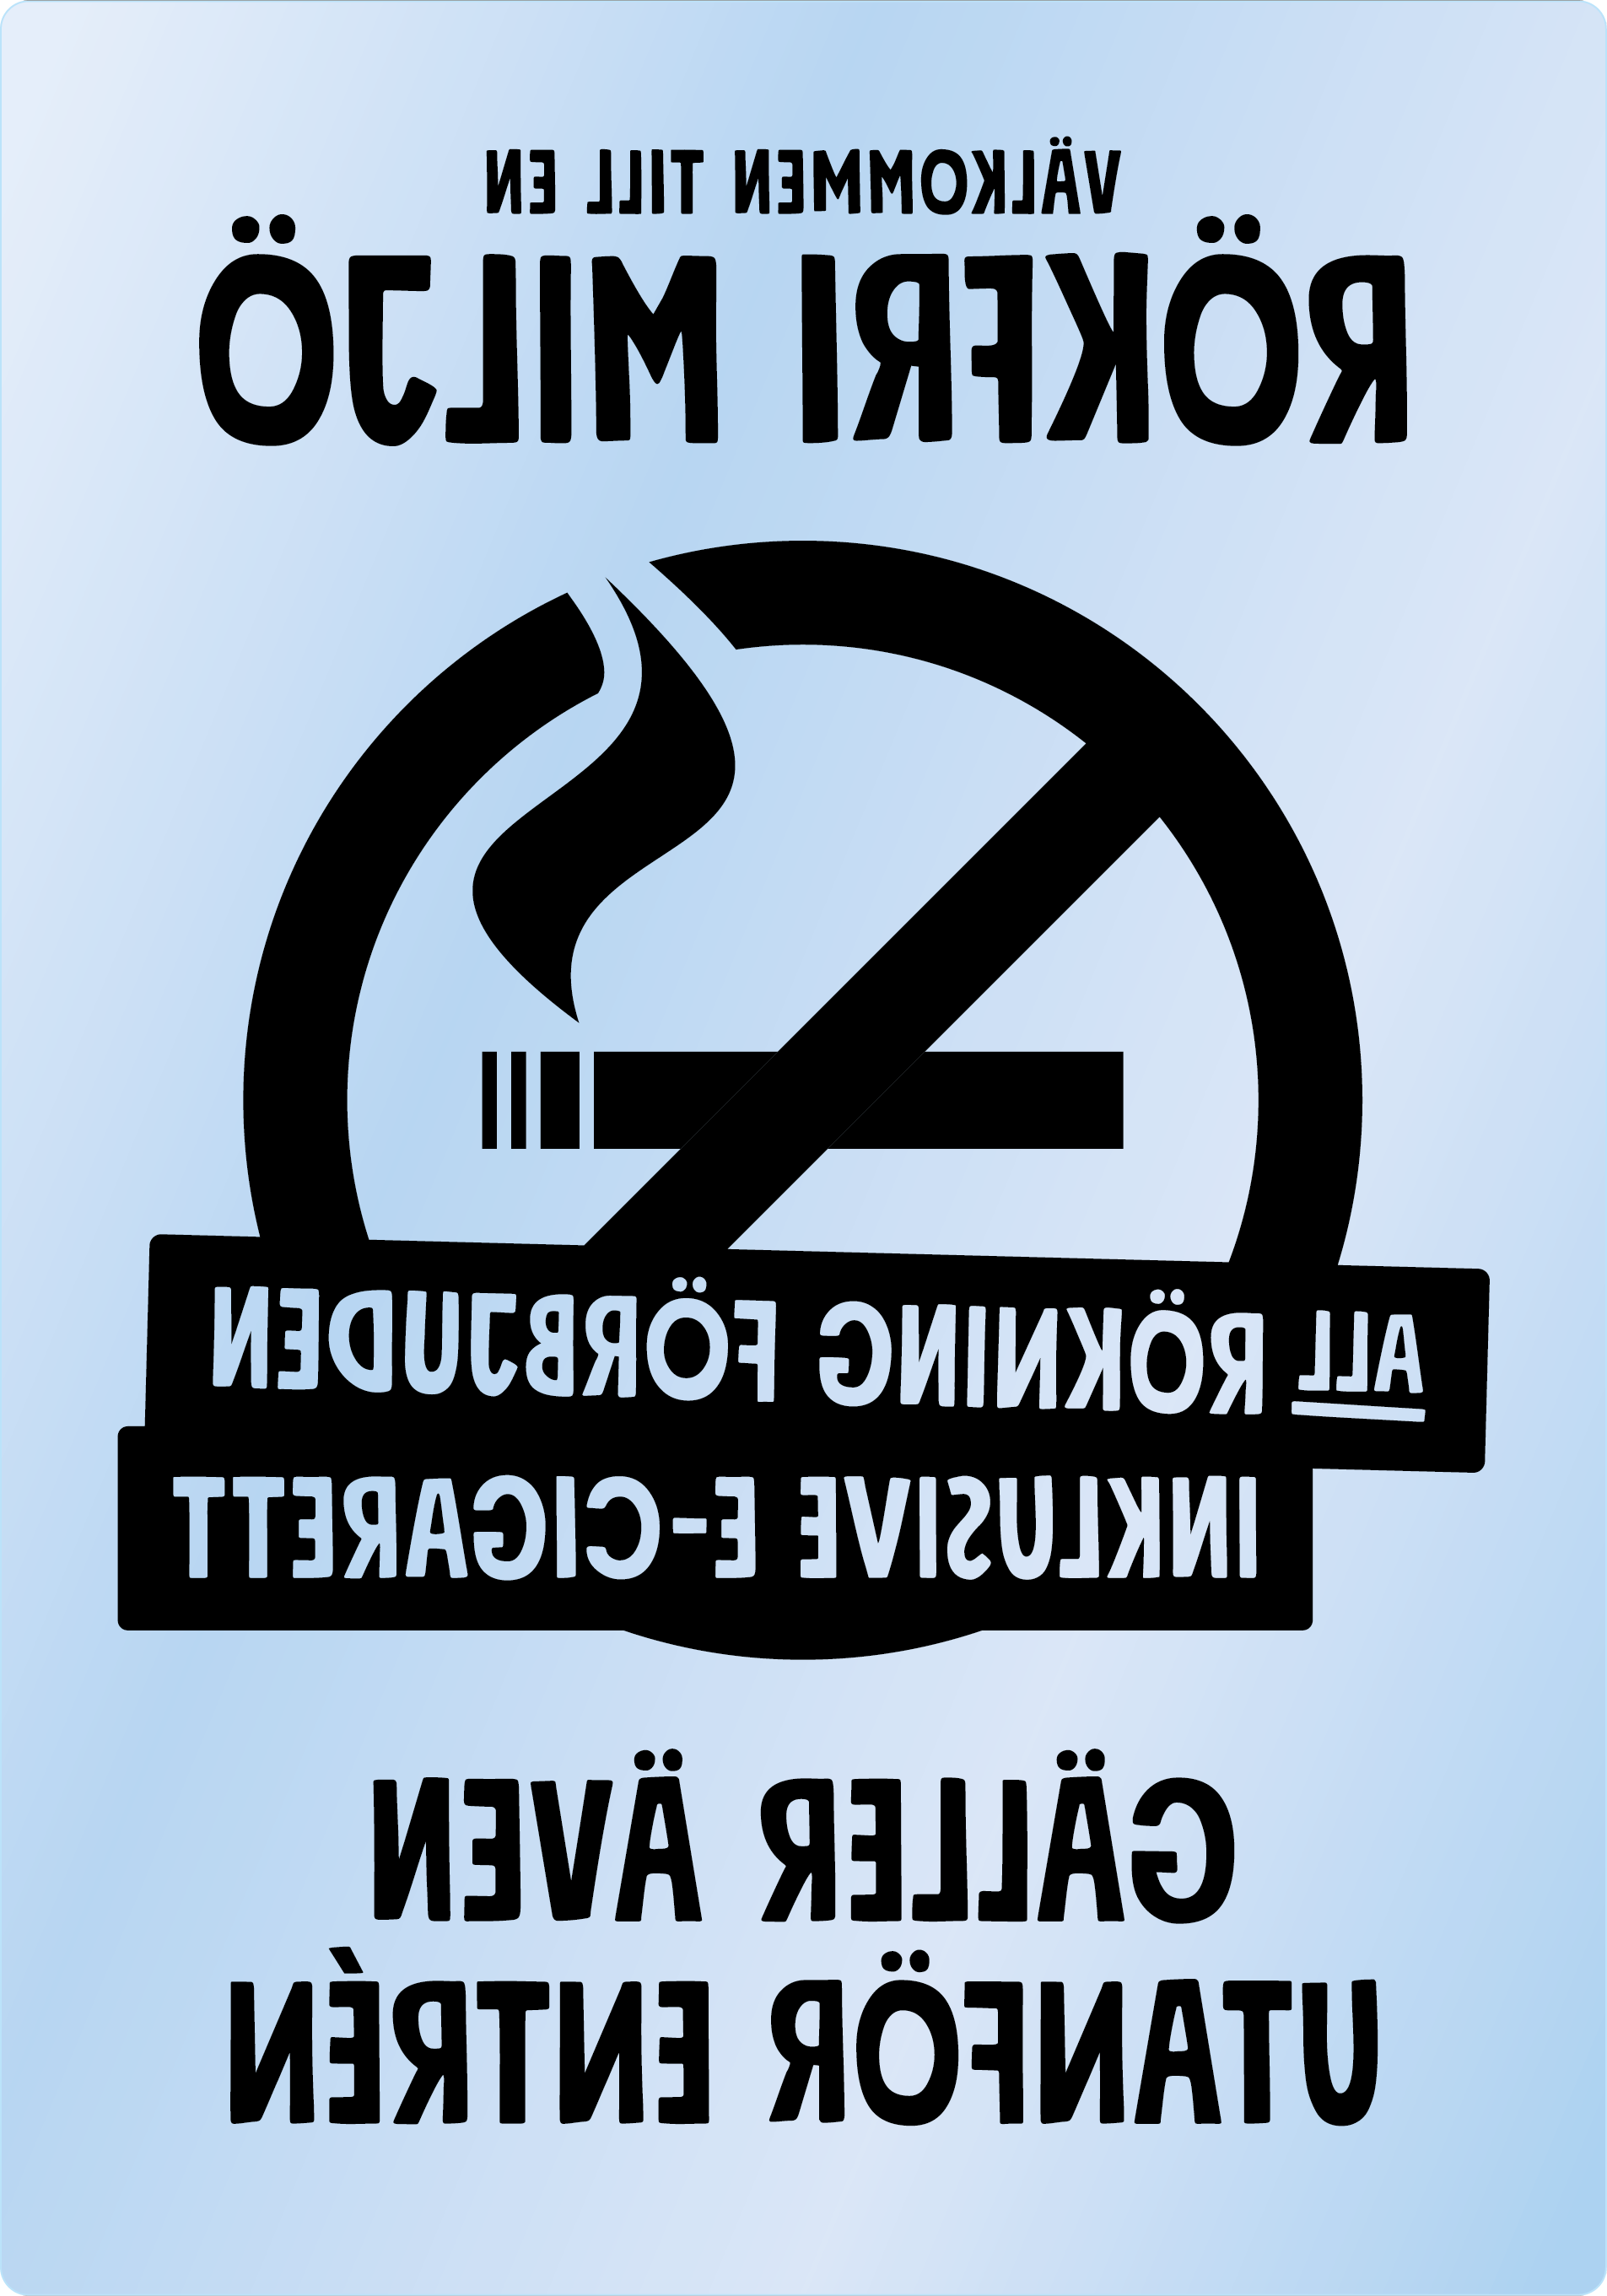 Bild rökförbudsskylt 04B13: Svart / Transparent